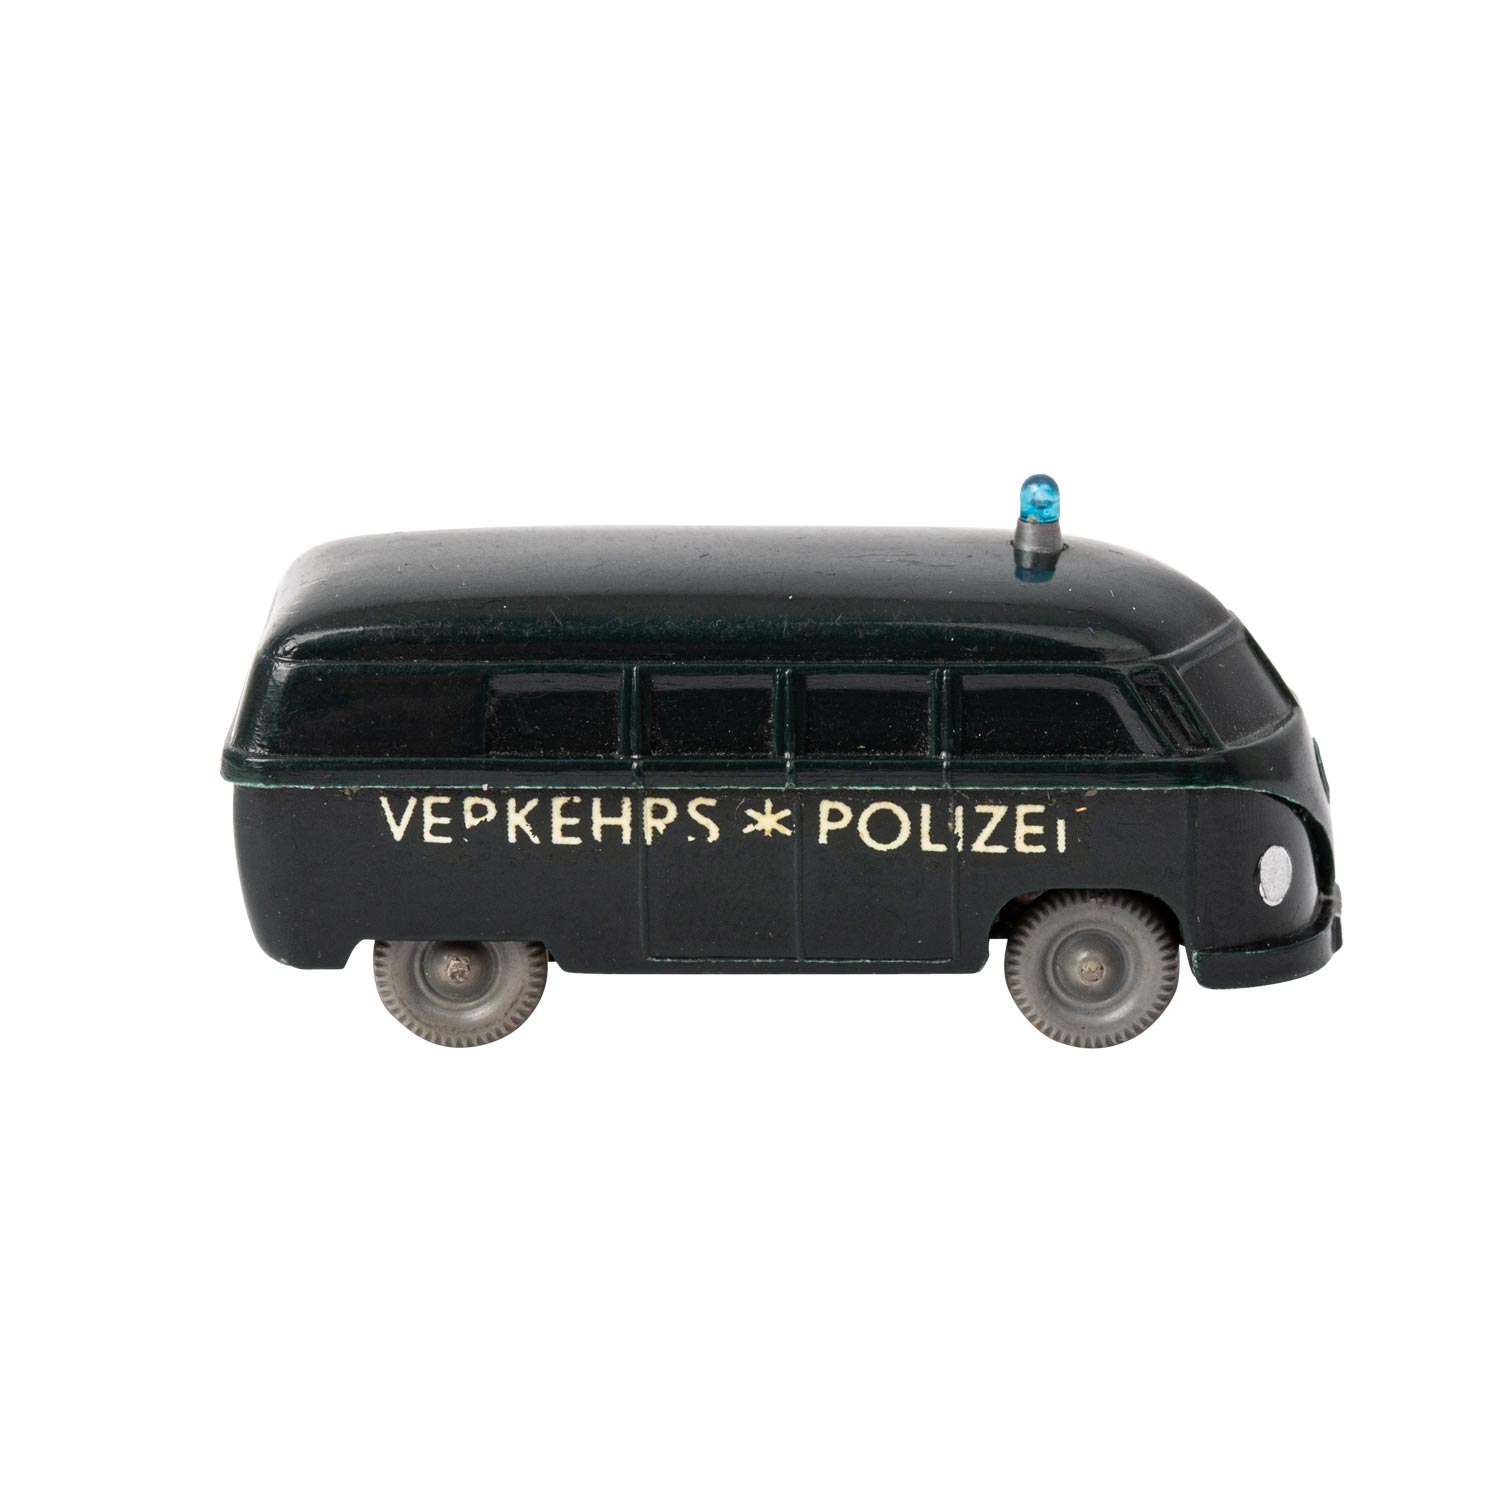 WIKING Polizei-Unfallwagen, 1959/60,unverglaster Rollachser, VW-Bus, schwarzgrüne Kar - Image 4 of 5